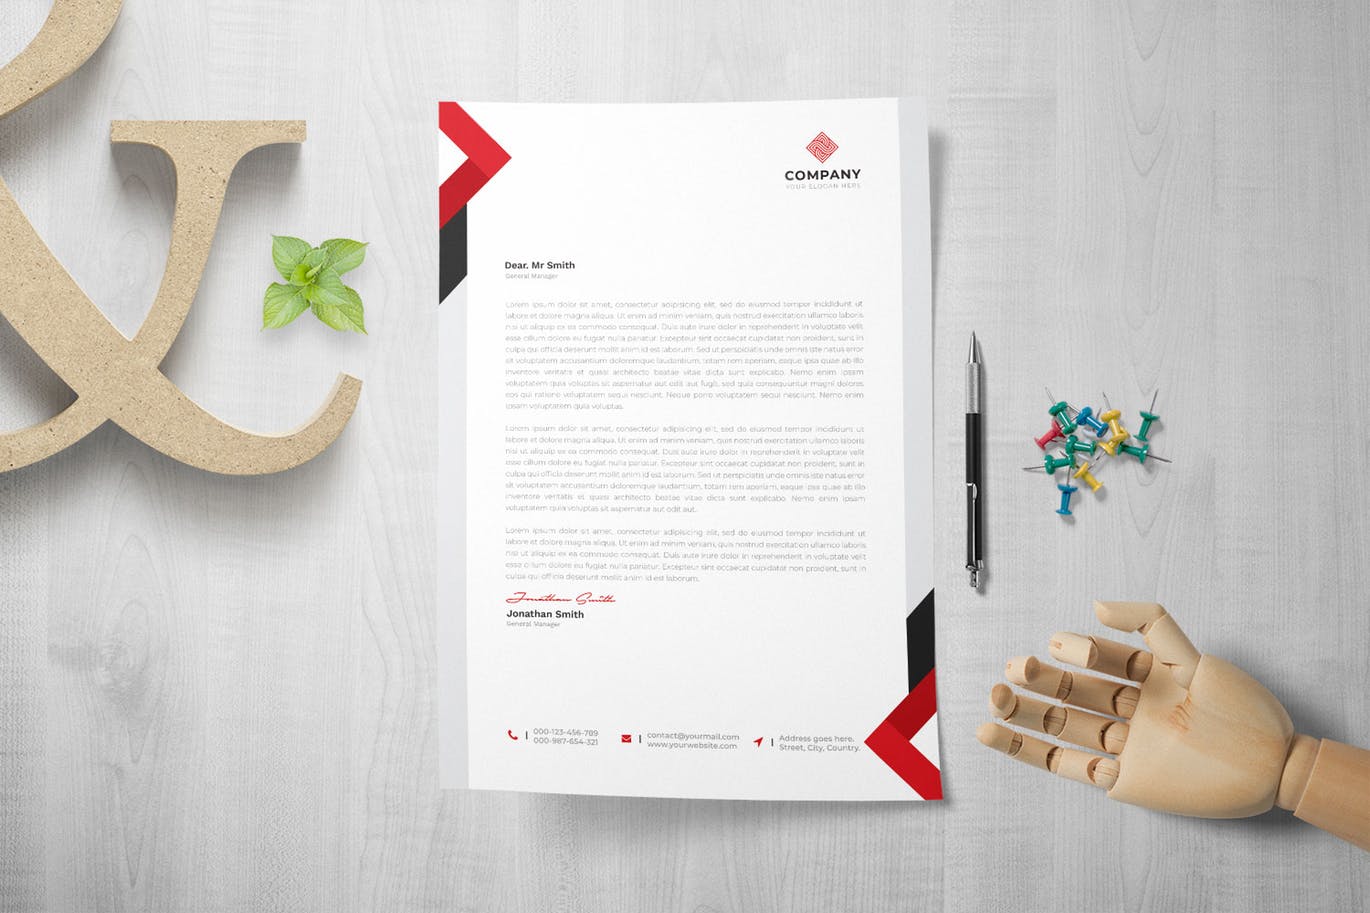 网络科技/技术开发企业信纸排版模板 Letterhead插图(1)